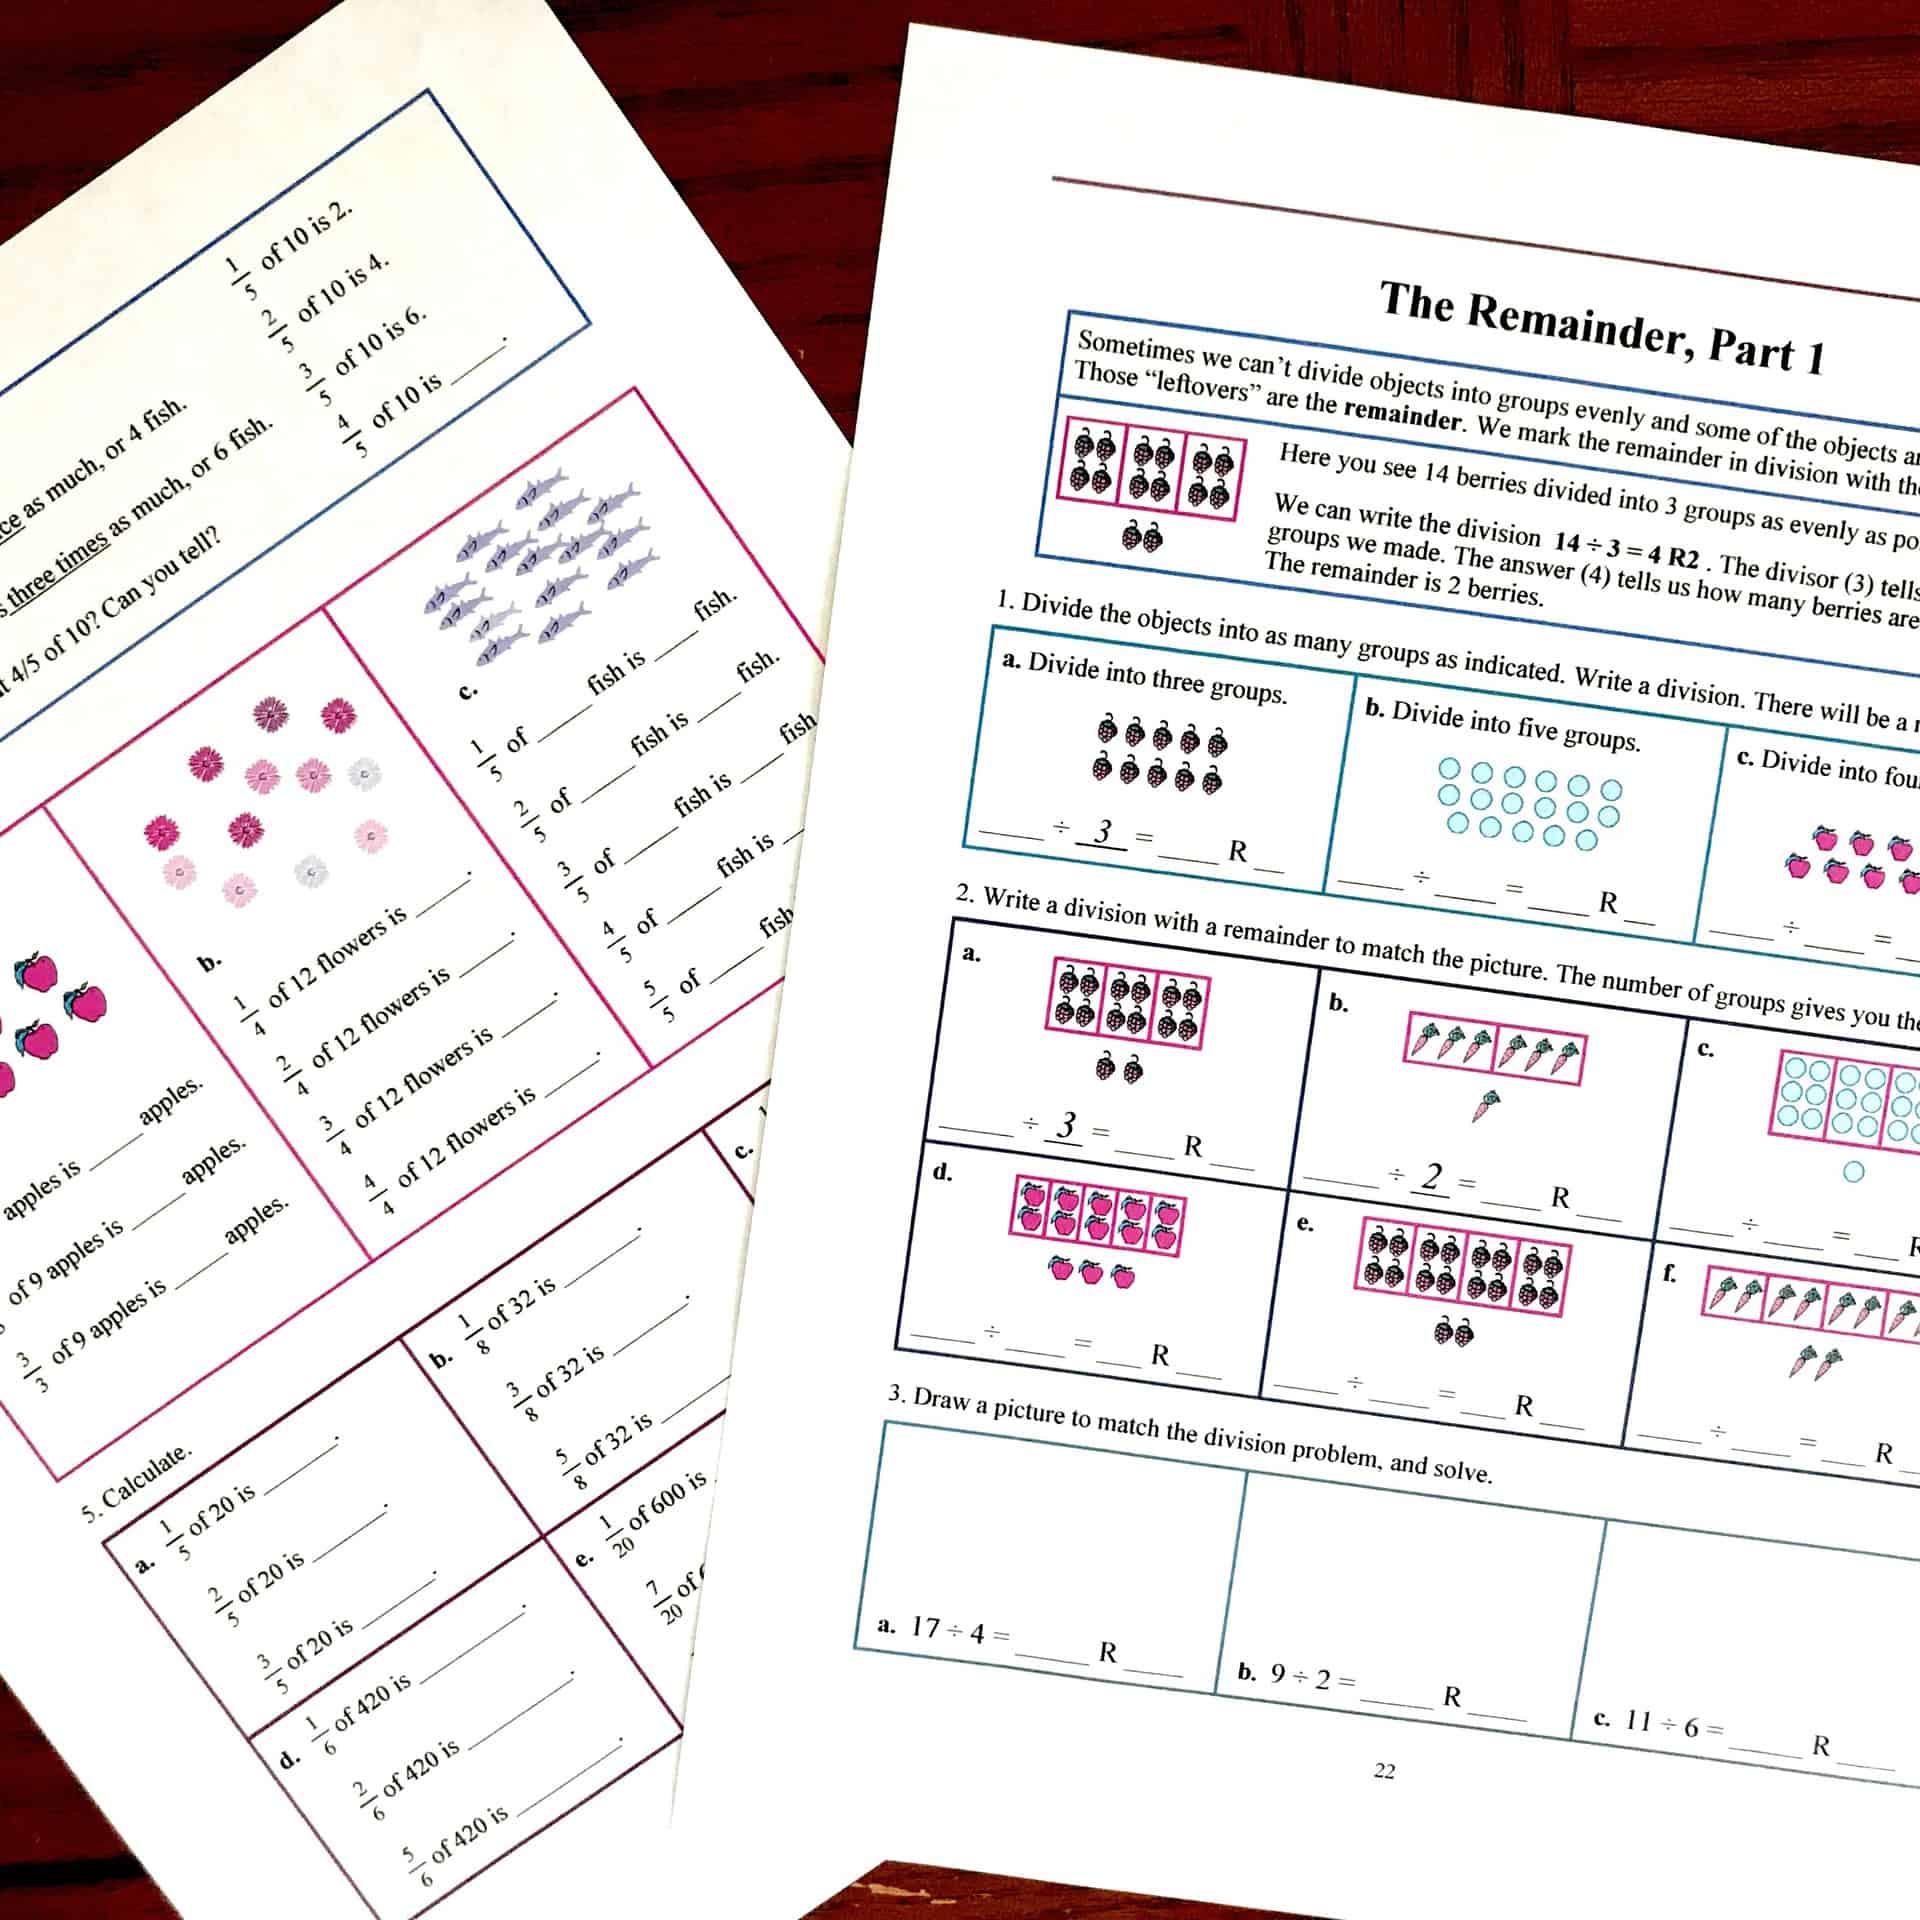 Math Mammoth: An Affordable Homeschool Math Program